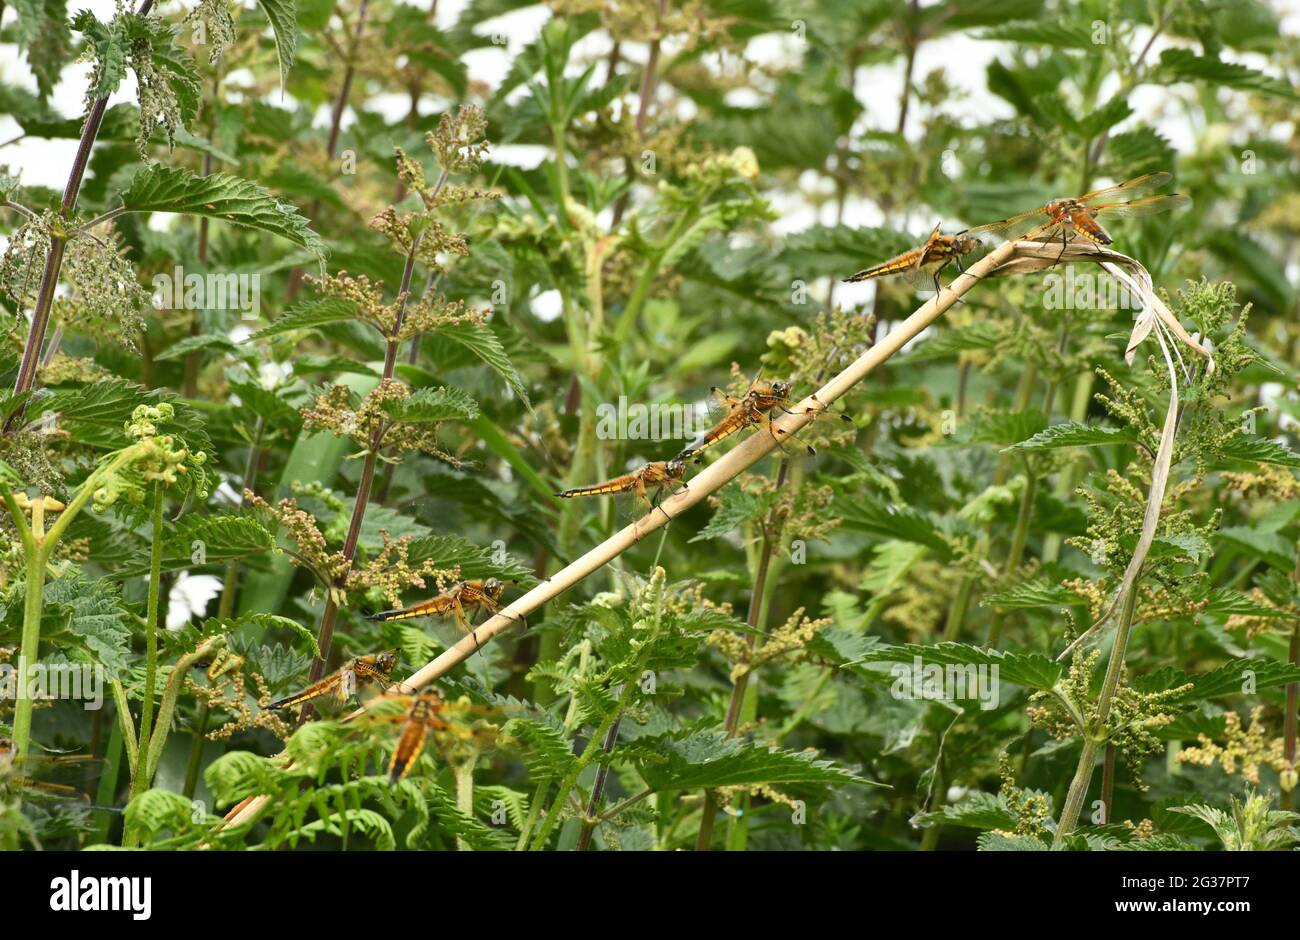 Chaser à quatre points Dragonflys'Libellula quadrimaculata' s'alignent sur une tige de roseau dans la réserve naturelle RSPB de Ham Wall, sur les niveaux Somerset. Avalon mar Banque D'Images